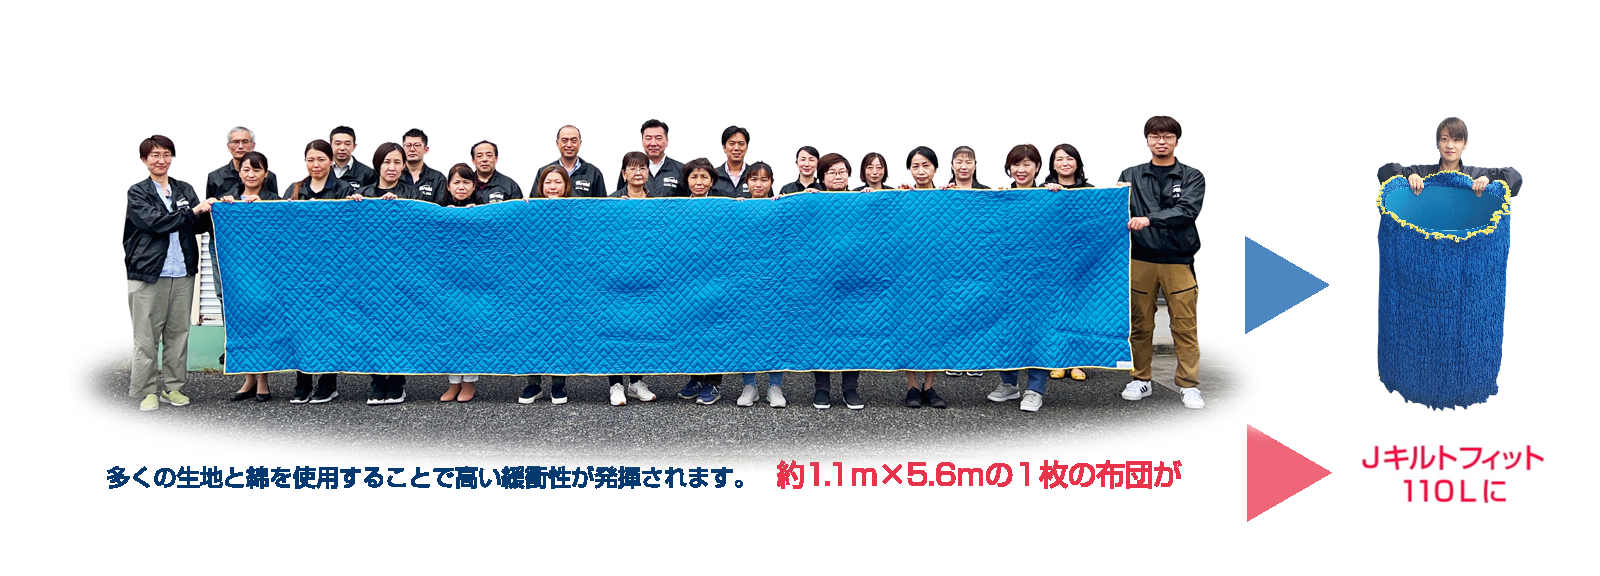 日本製アサヒ フィットカバー(ゴム入りパッド)110L 1枚(梱包用品 養生資材 引越し用品 引越資材 蛇腹形状) 表生地:青色・ 裏生地: - 1